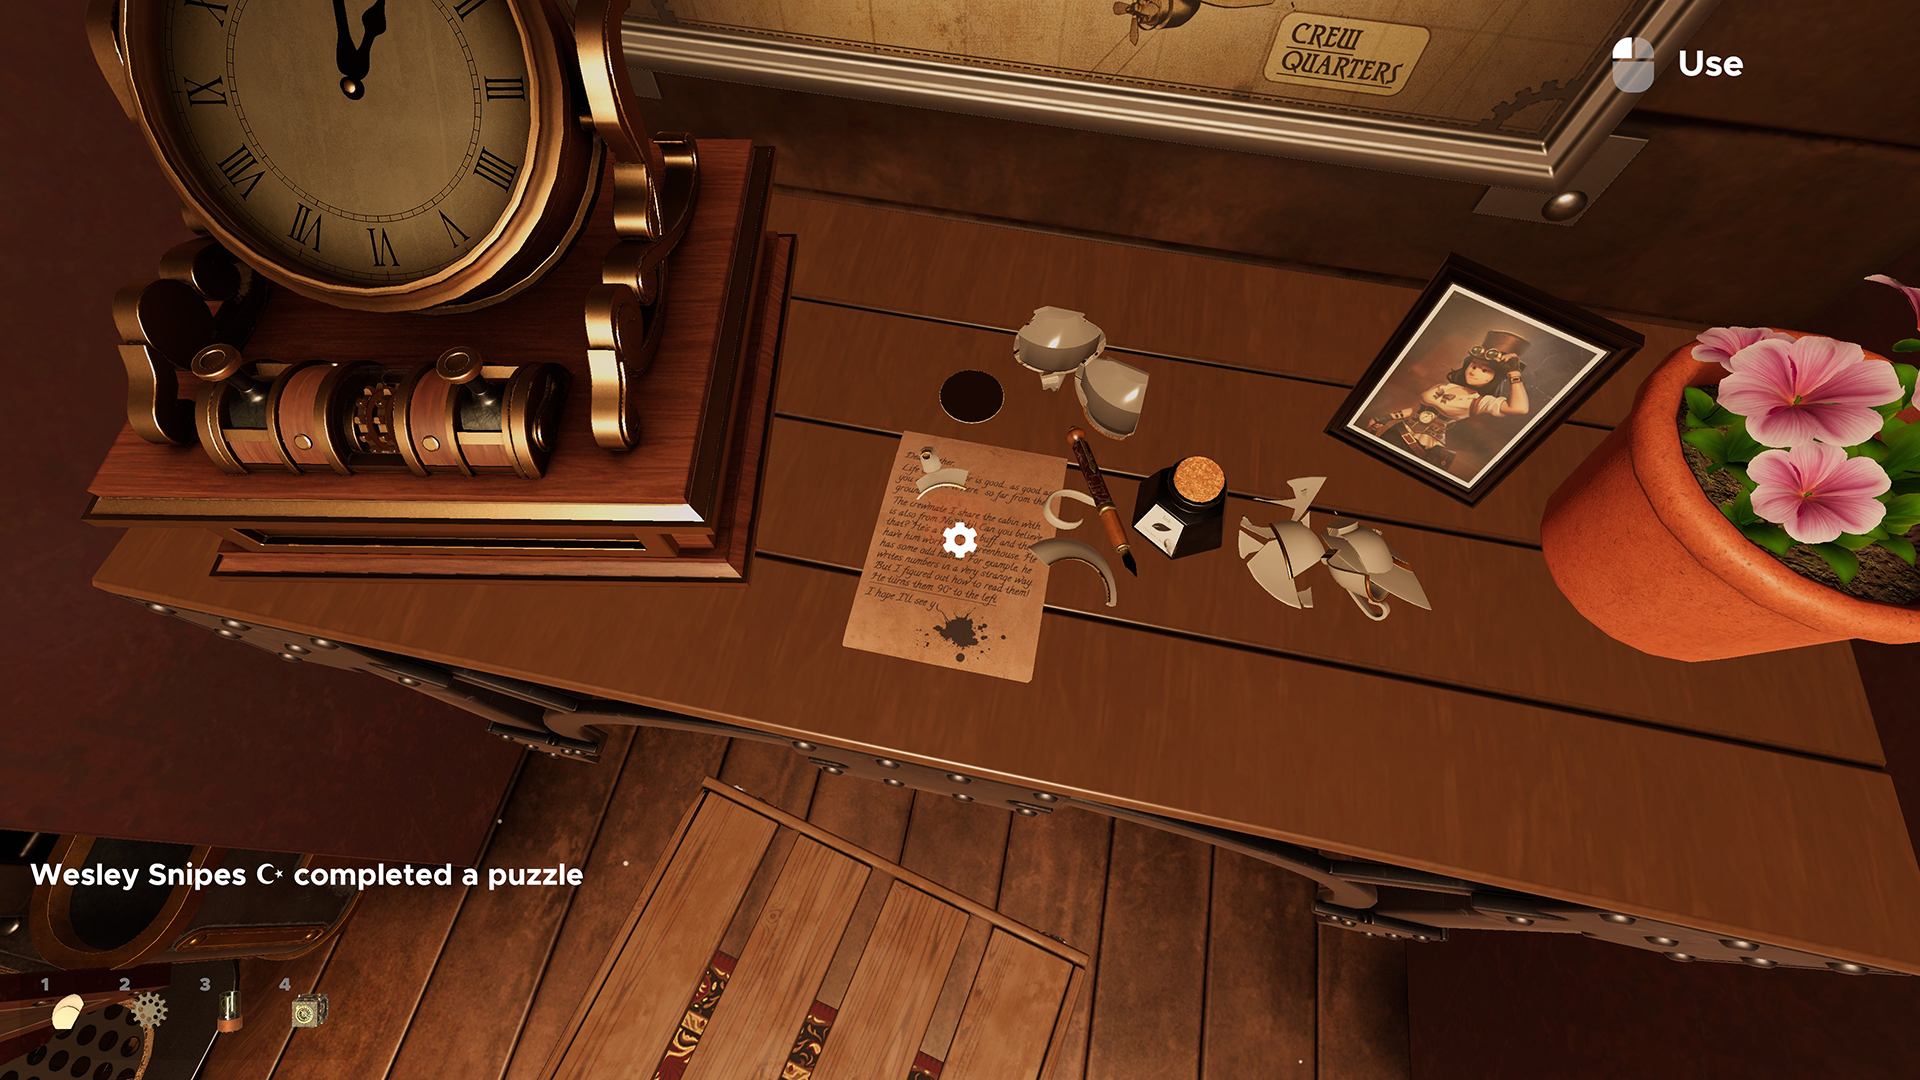 Escape Simulator: Steampunk DLC – Buried Treasure